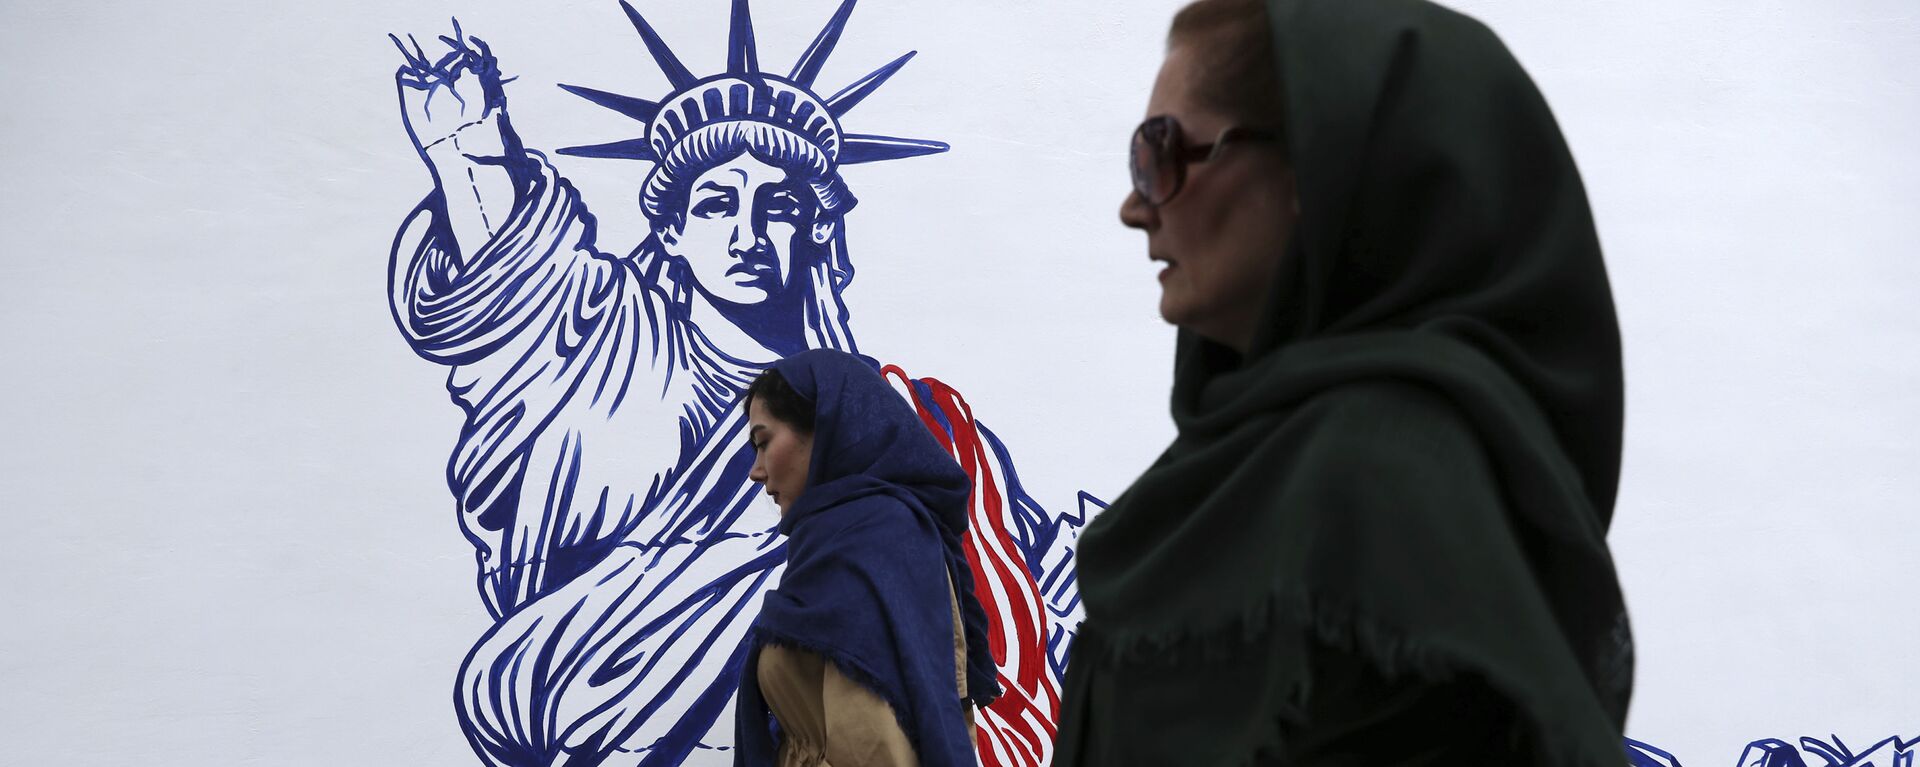 Pessoas passam por mural satírico da Estátua da Liberdade no prédio da antiga embaixada da EUA em Teerã, Irã, 2 de novembro de 2019 - Sputnik Brasil, 1920, 17.07.2022